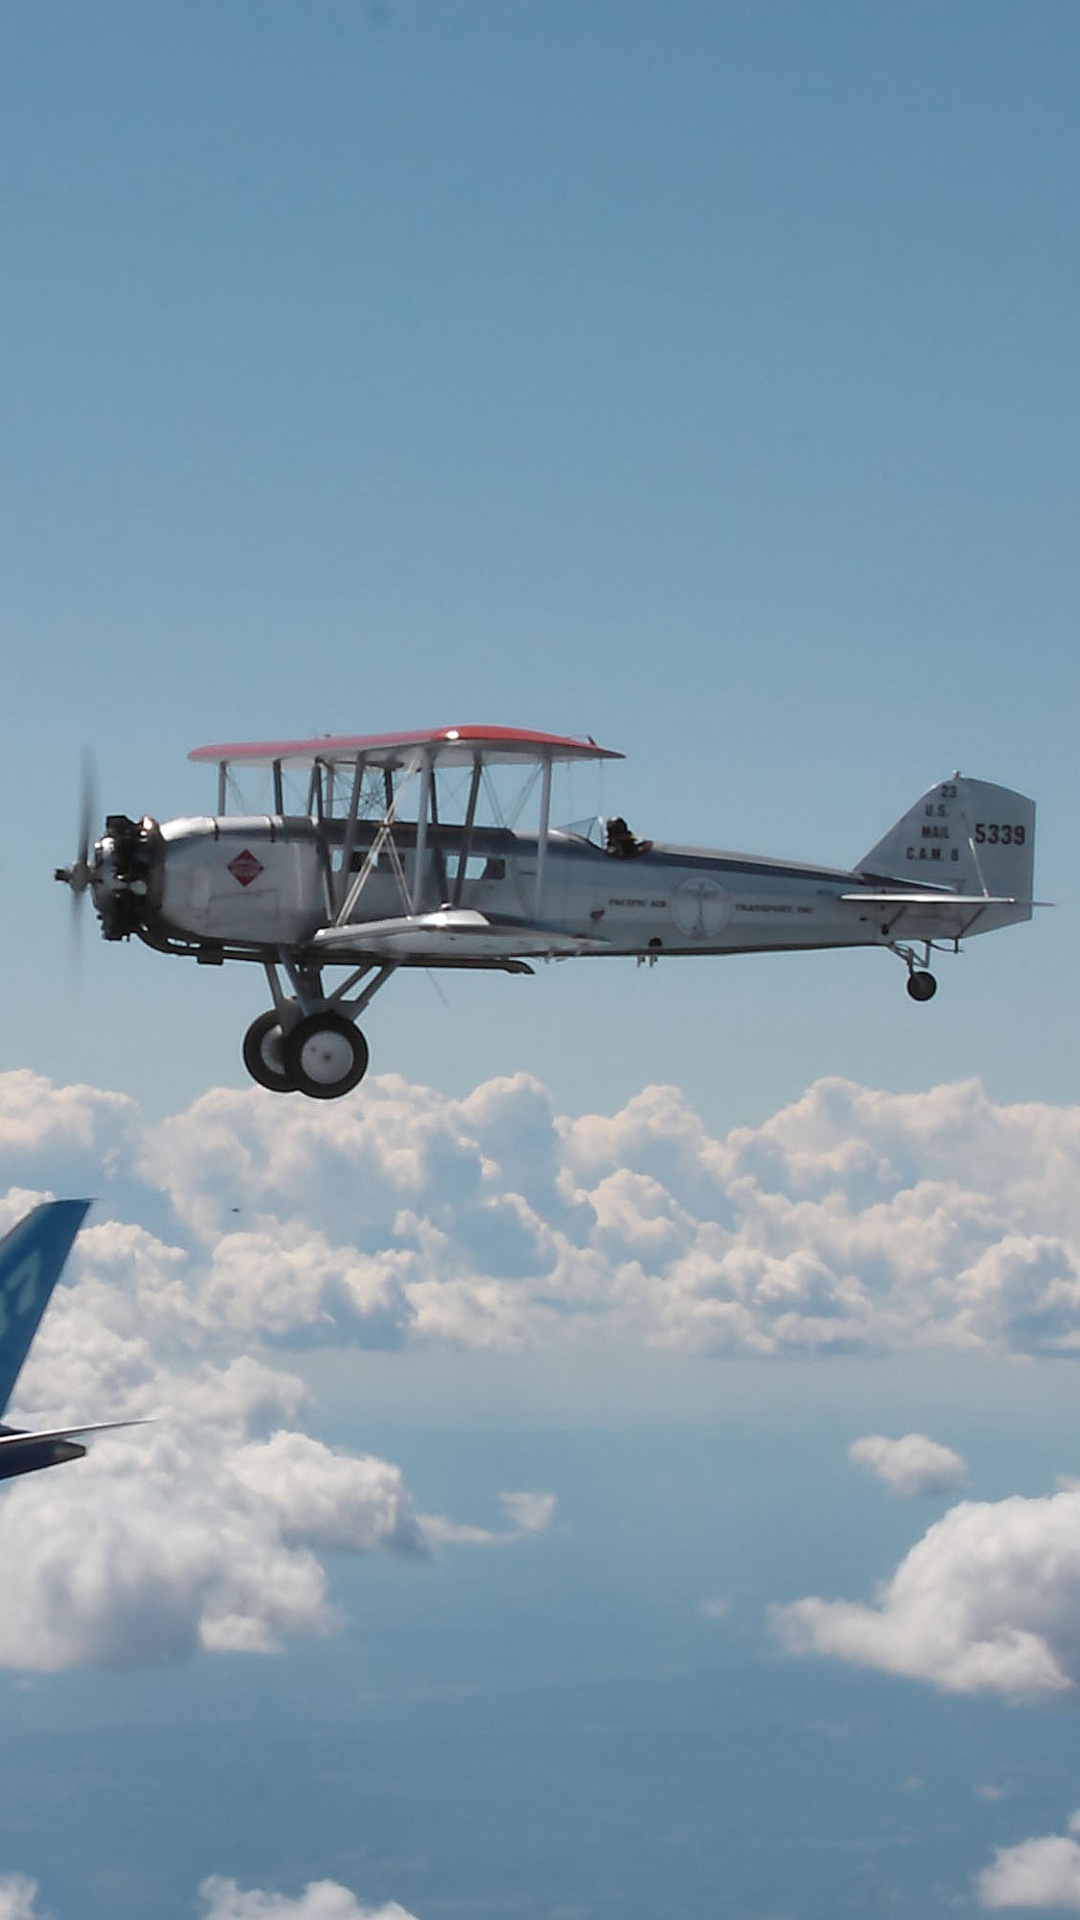 Avion Bleu et Blanc Volant Sous un Ciel Bleu Pendant la Journée. Wallpaper in 1080x1920 Resolution